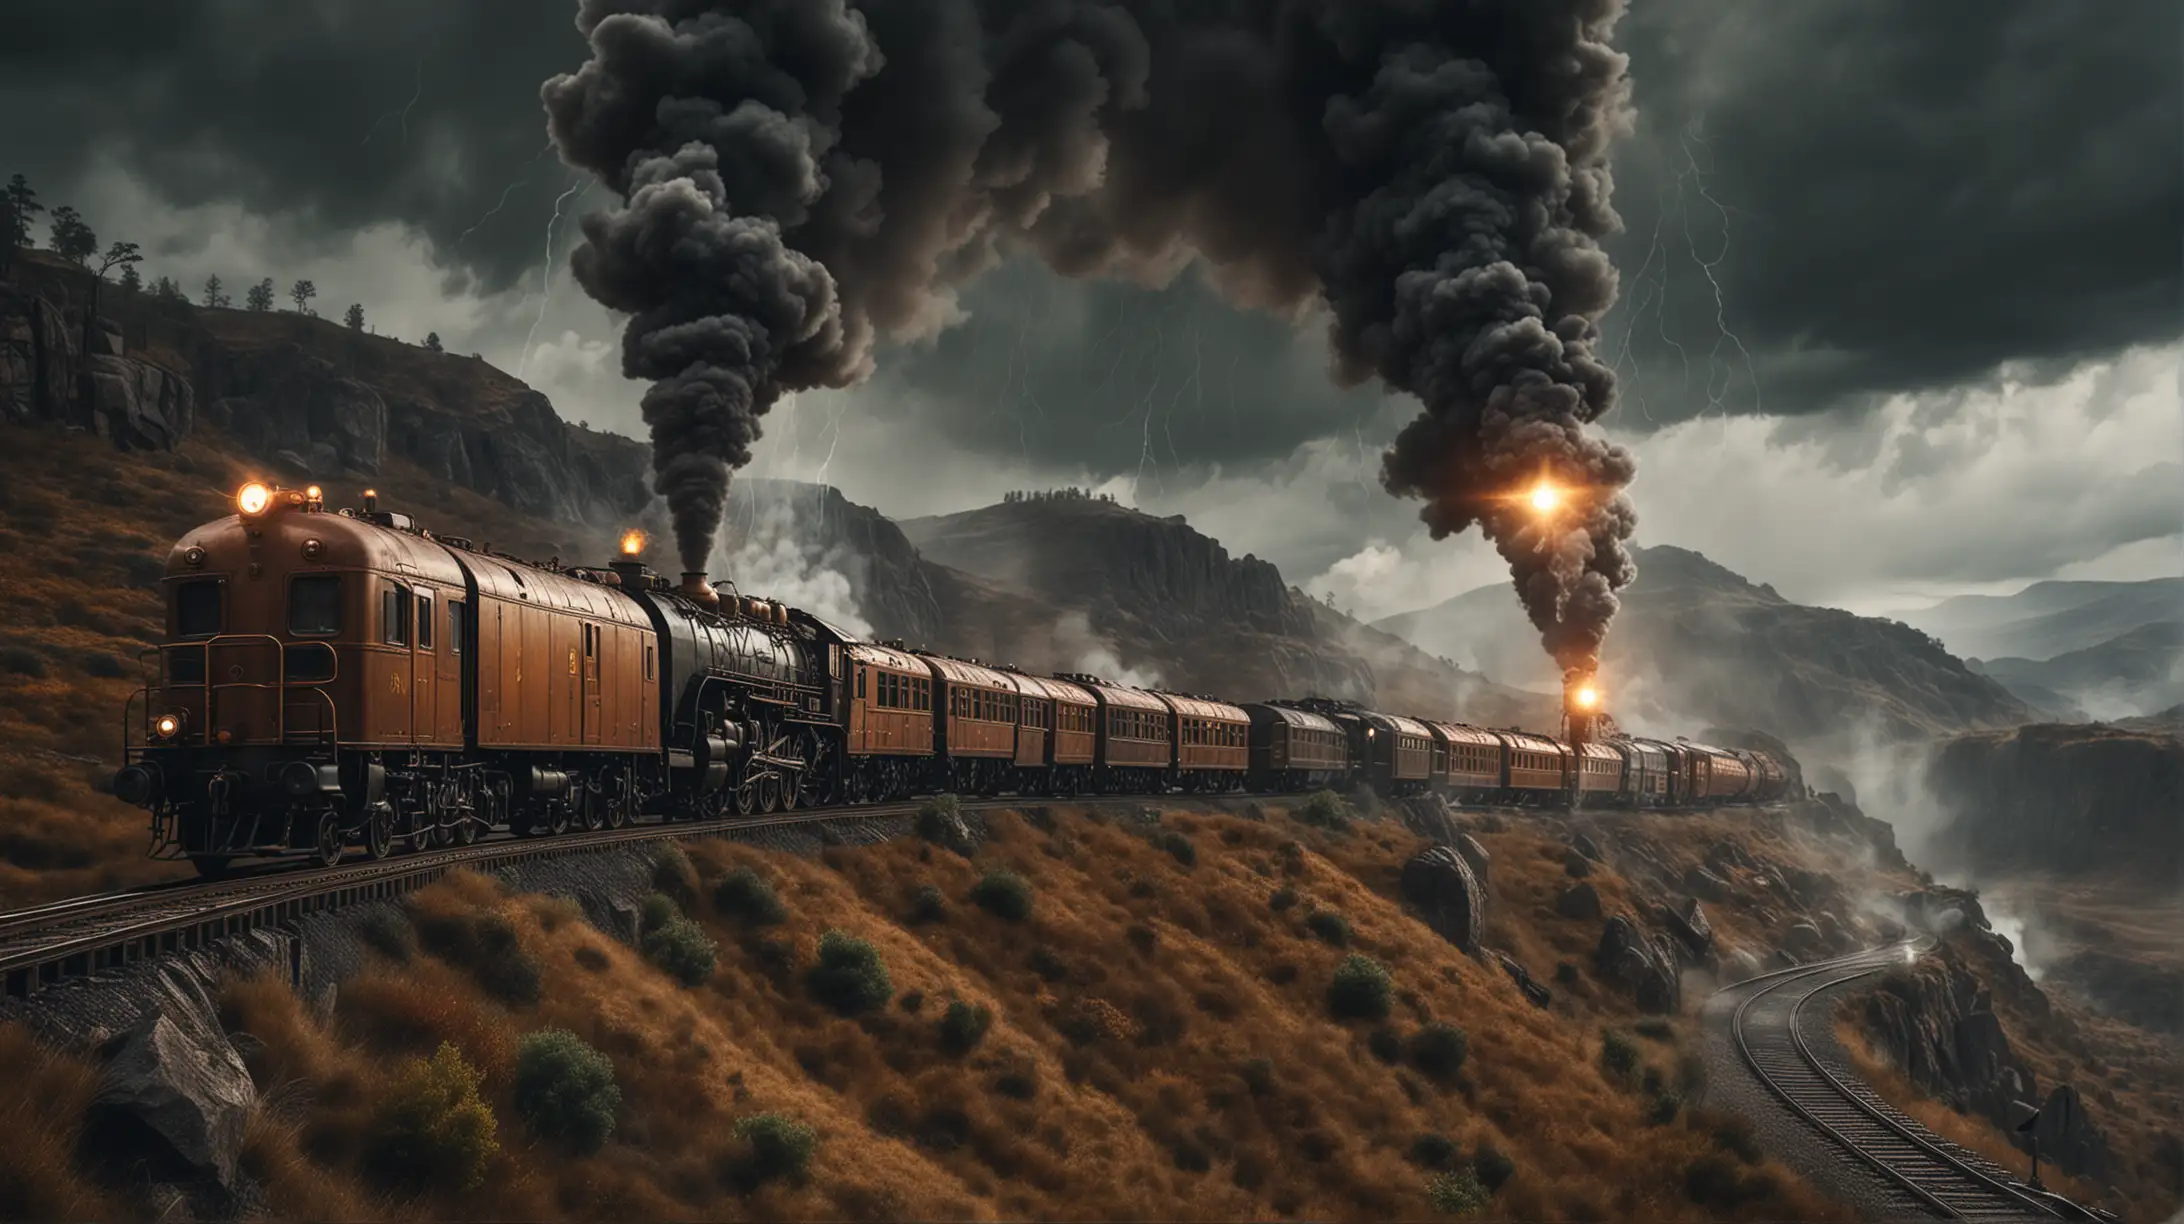 Steampunk Train Journey Through Stormy Wilderness